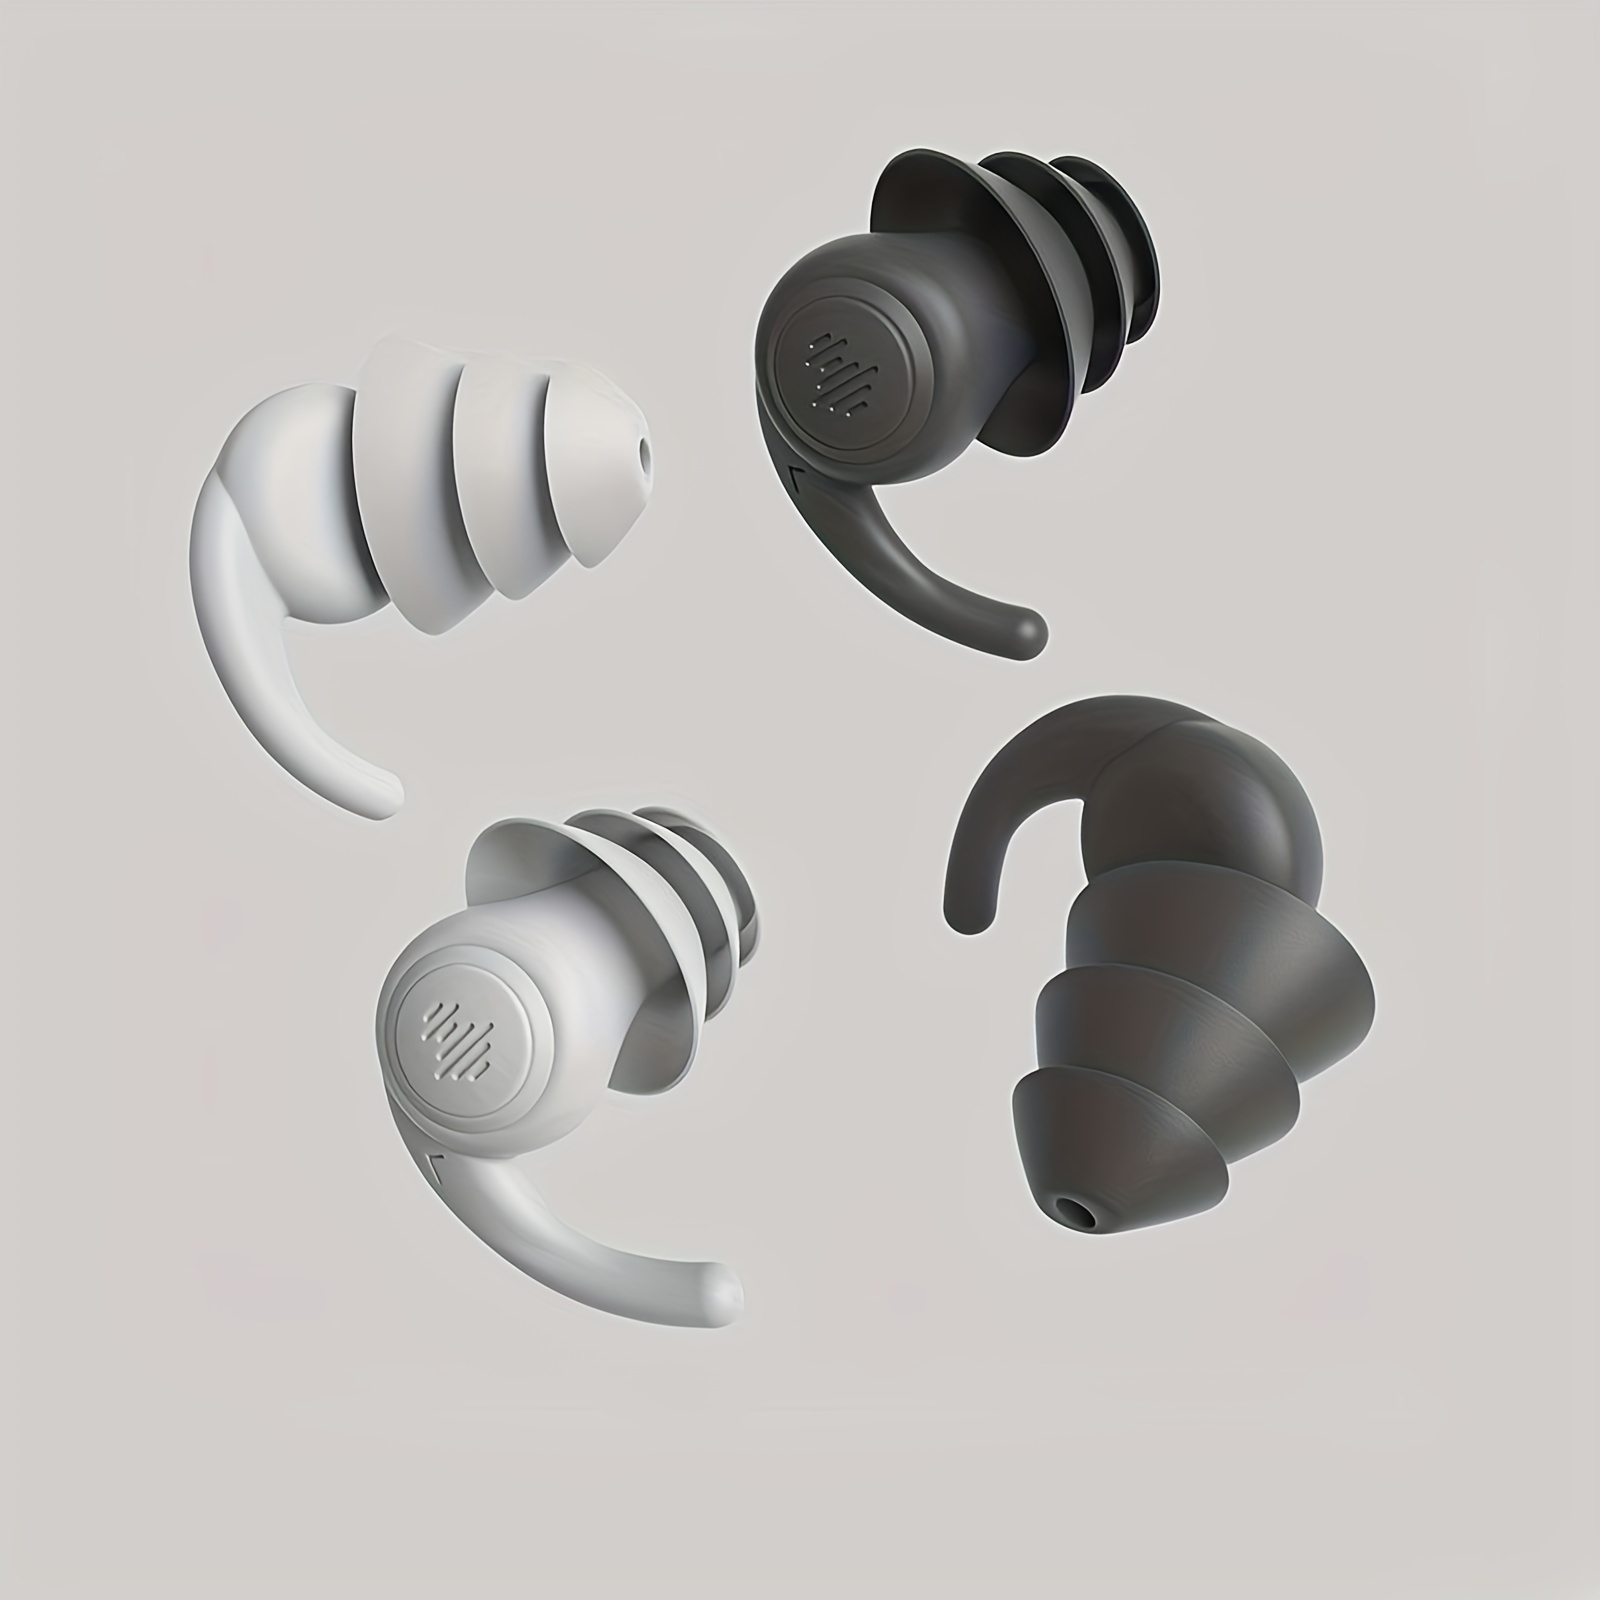 Loop Quiet Ear Plugs for Noise Reduction â€“ Super Soft, Reusable